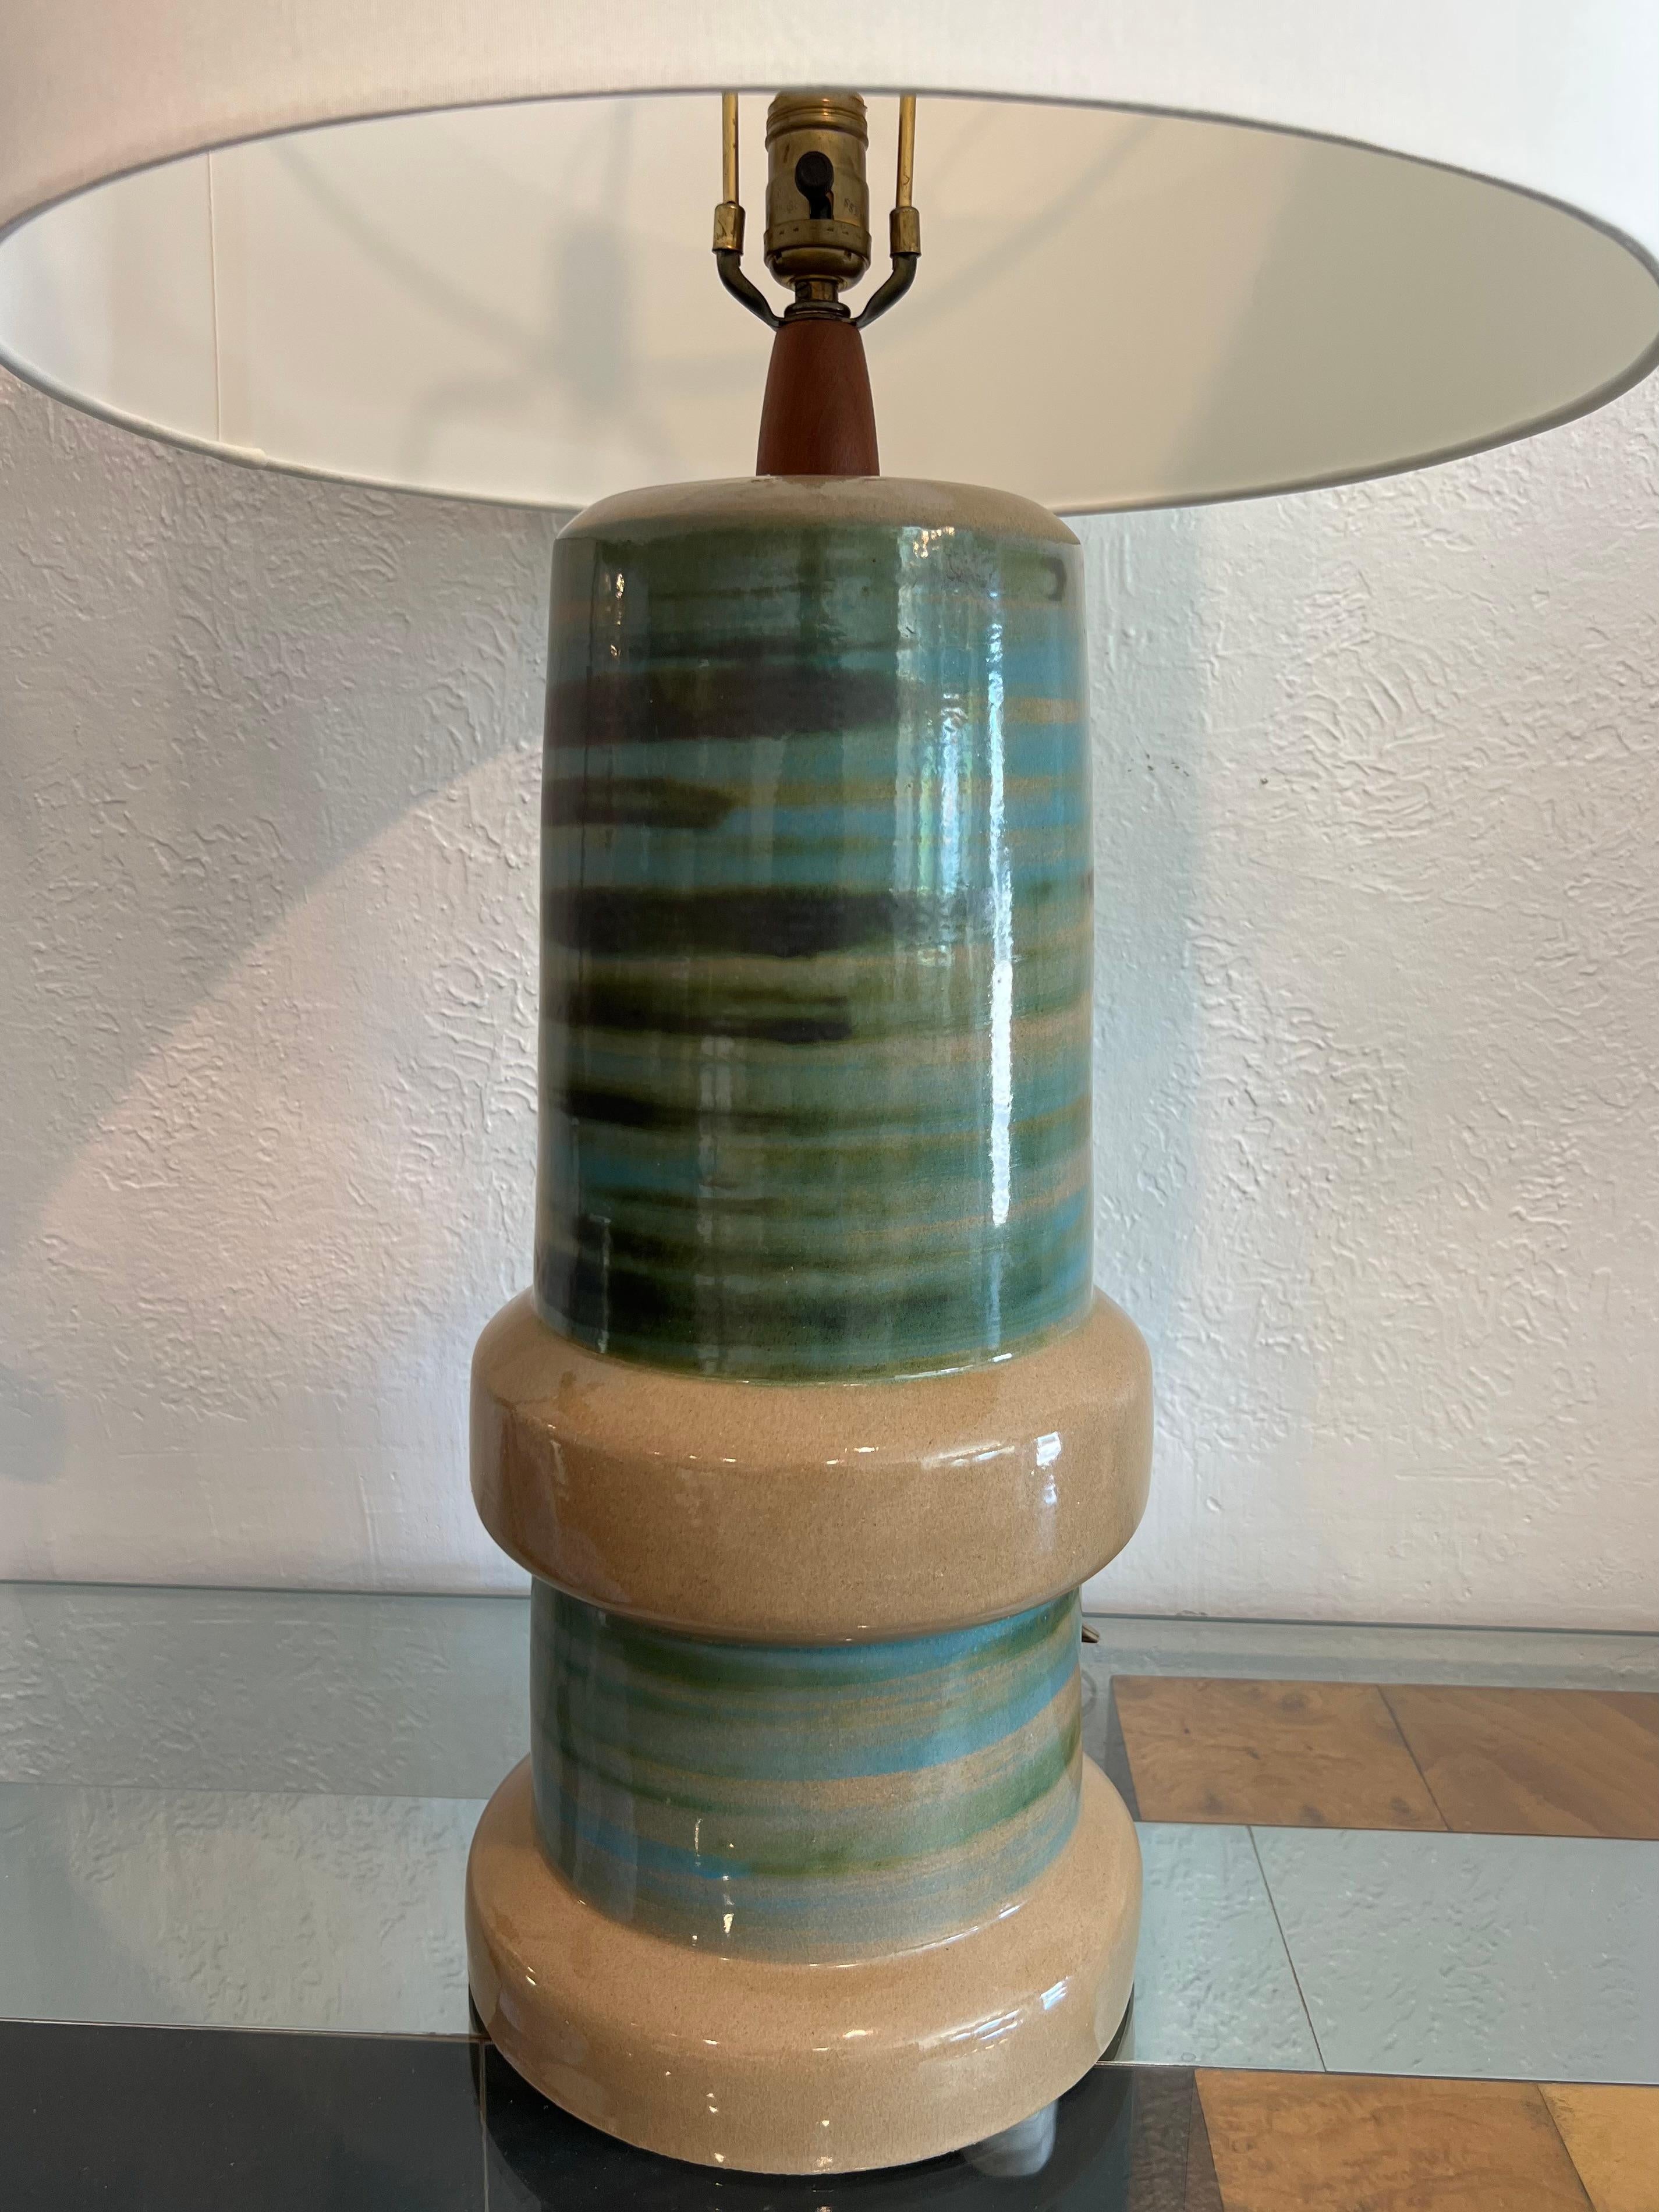 Monumentale lampe de table en céramique de Jane et Gordon Martz. Équipé d'un nouvel abat-jour en forme de tambour. Prise et câblage d'origine (voir photos). Des photos supplémentaires sont disponibles sur demande. 

Dimensions totales : 36H 19